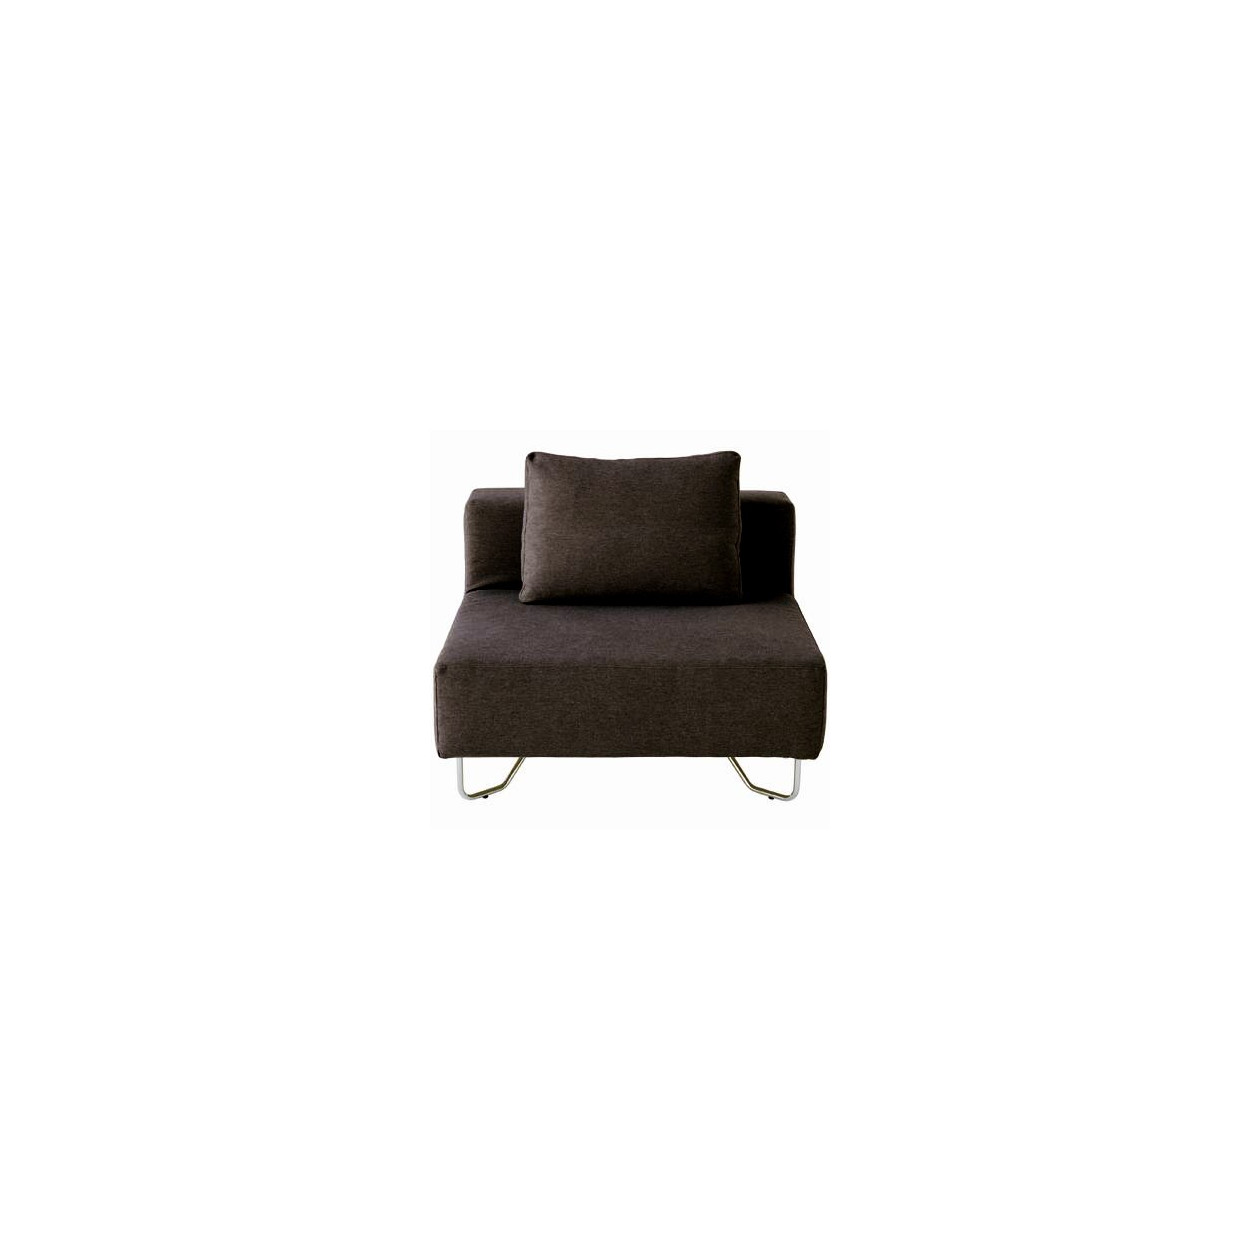 Czarno/brązowa sofa modułowa - element z oparciem 98 x 98 x 68cm